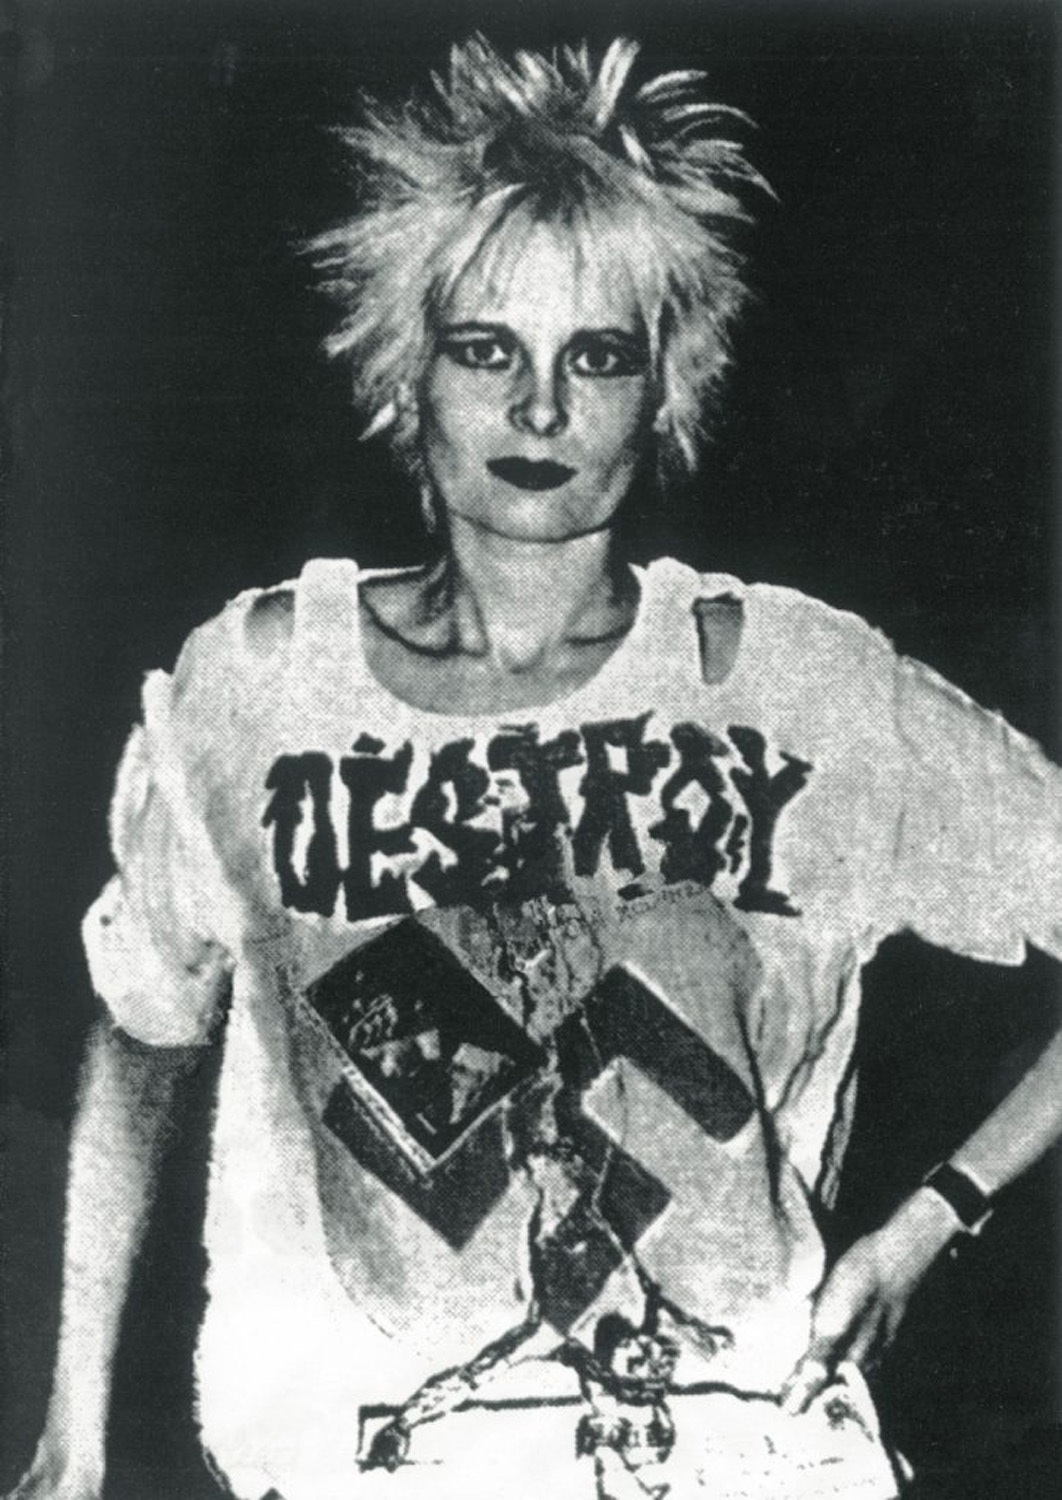 Tratta dal sito Westwood nel suo periodo punk